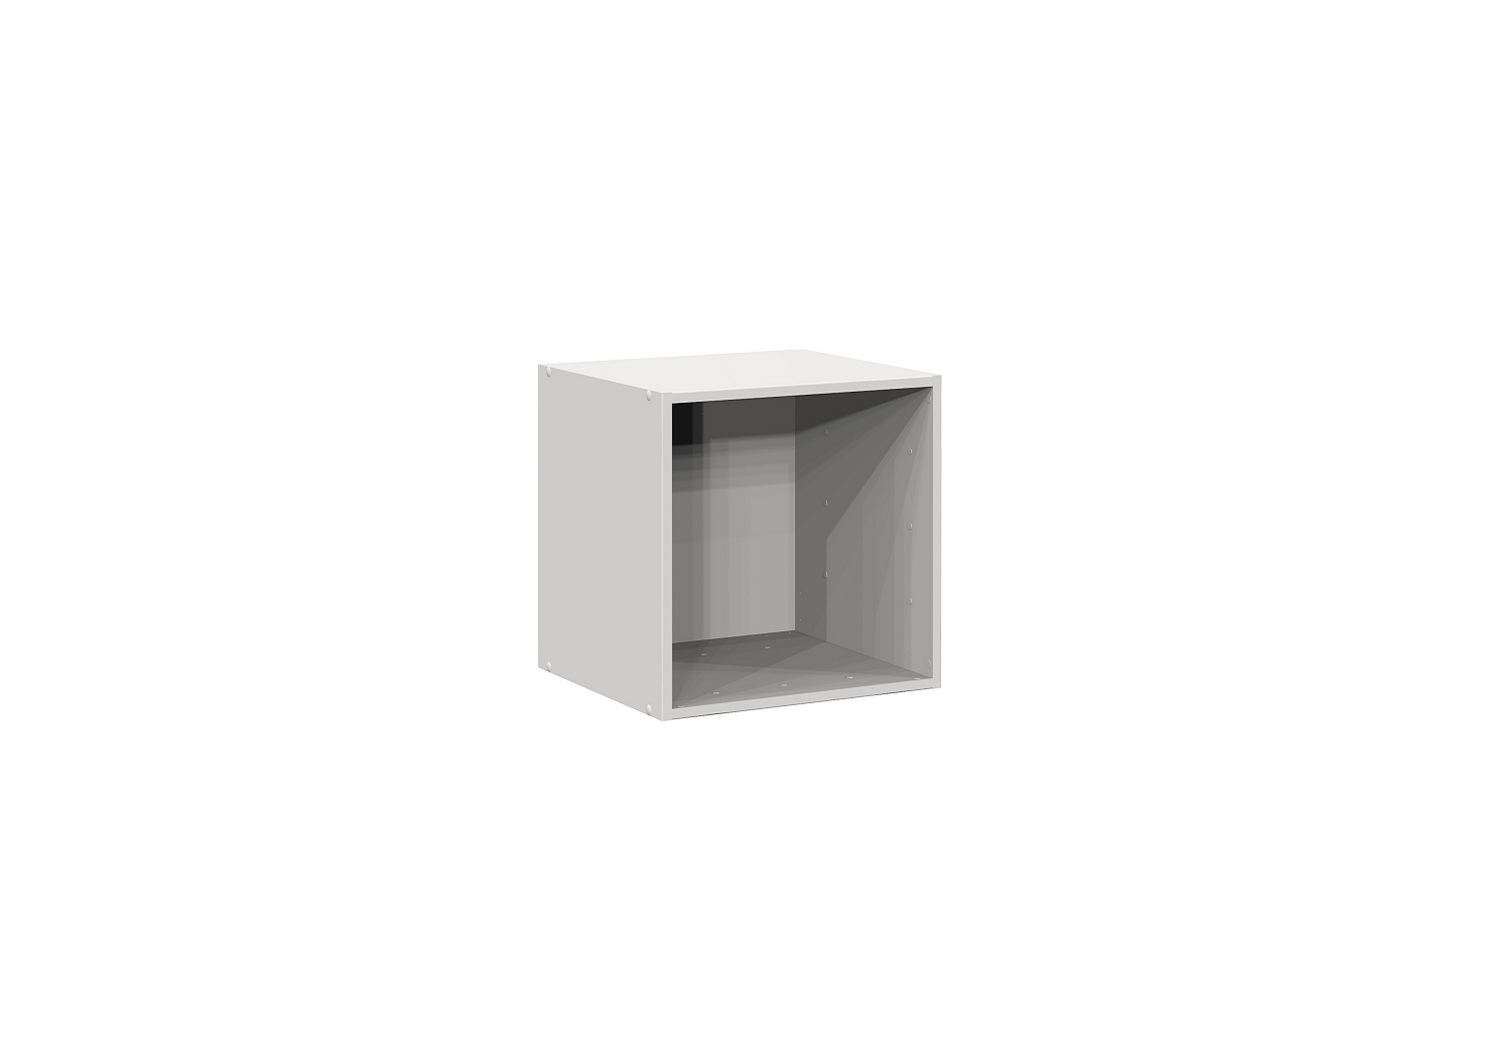 Bilrich Storage Furniture - Multi Kaz 1x1 Cube White